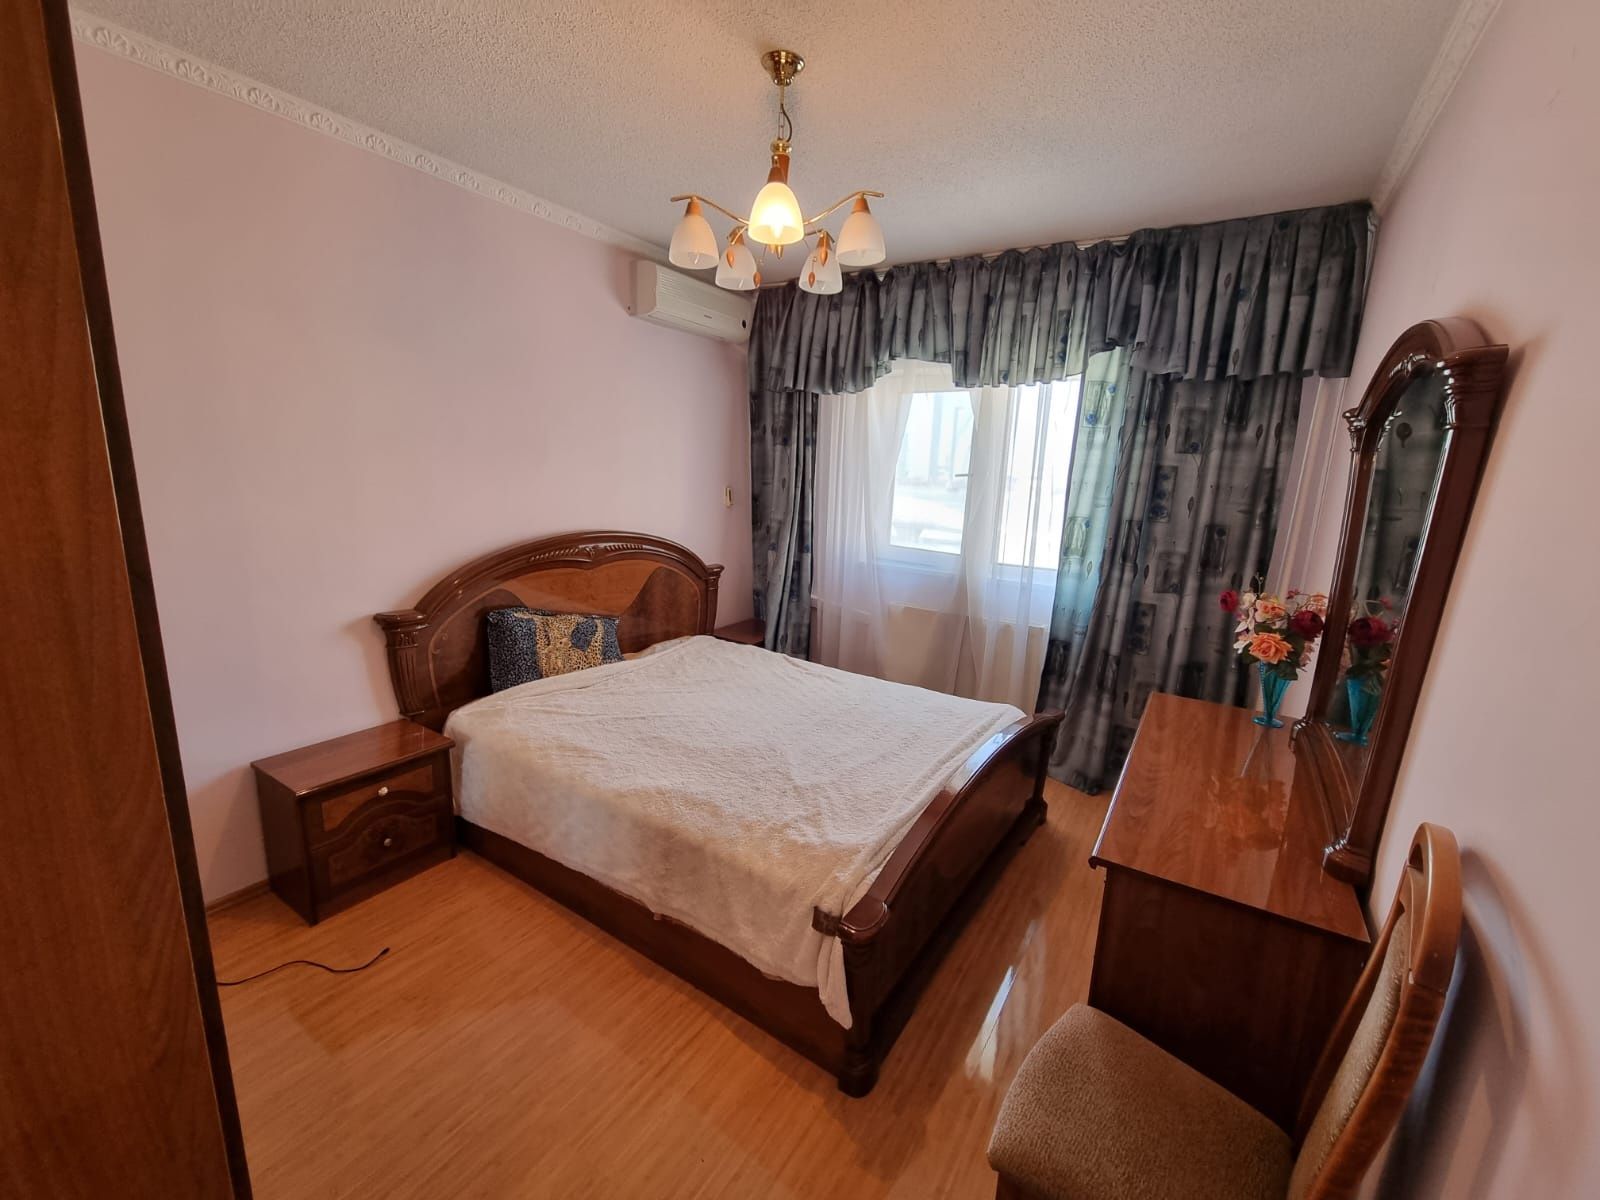 Мебель гостиная и спальня в отличном состоянии. Астана